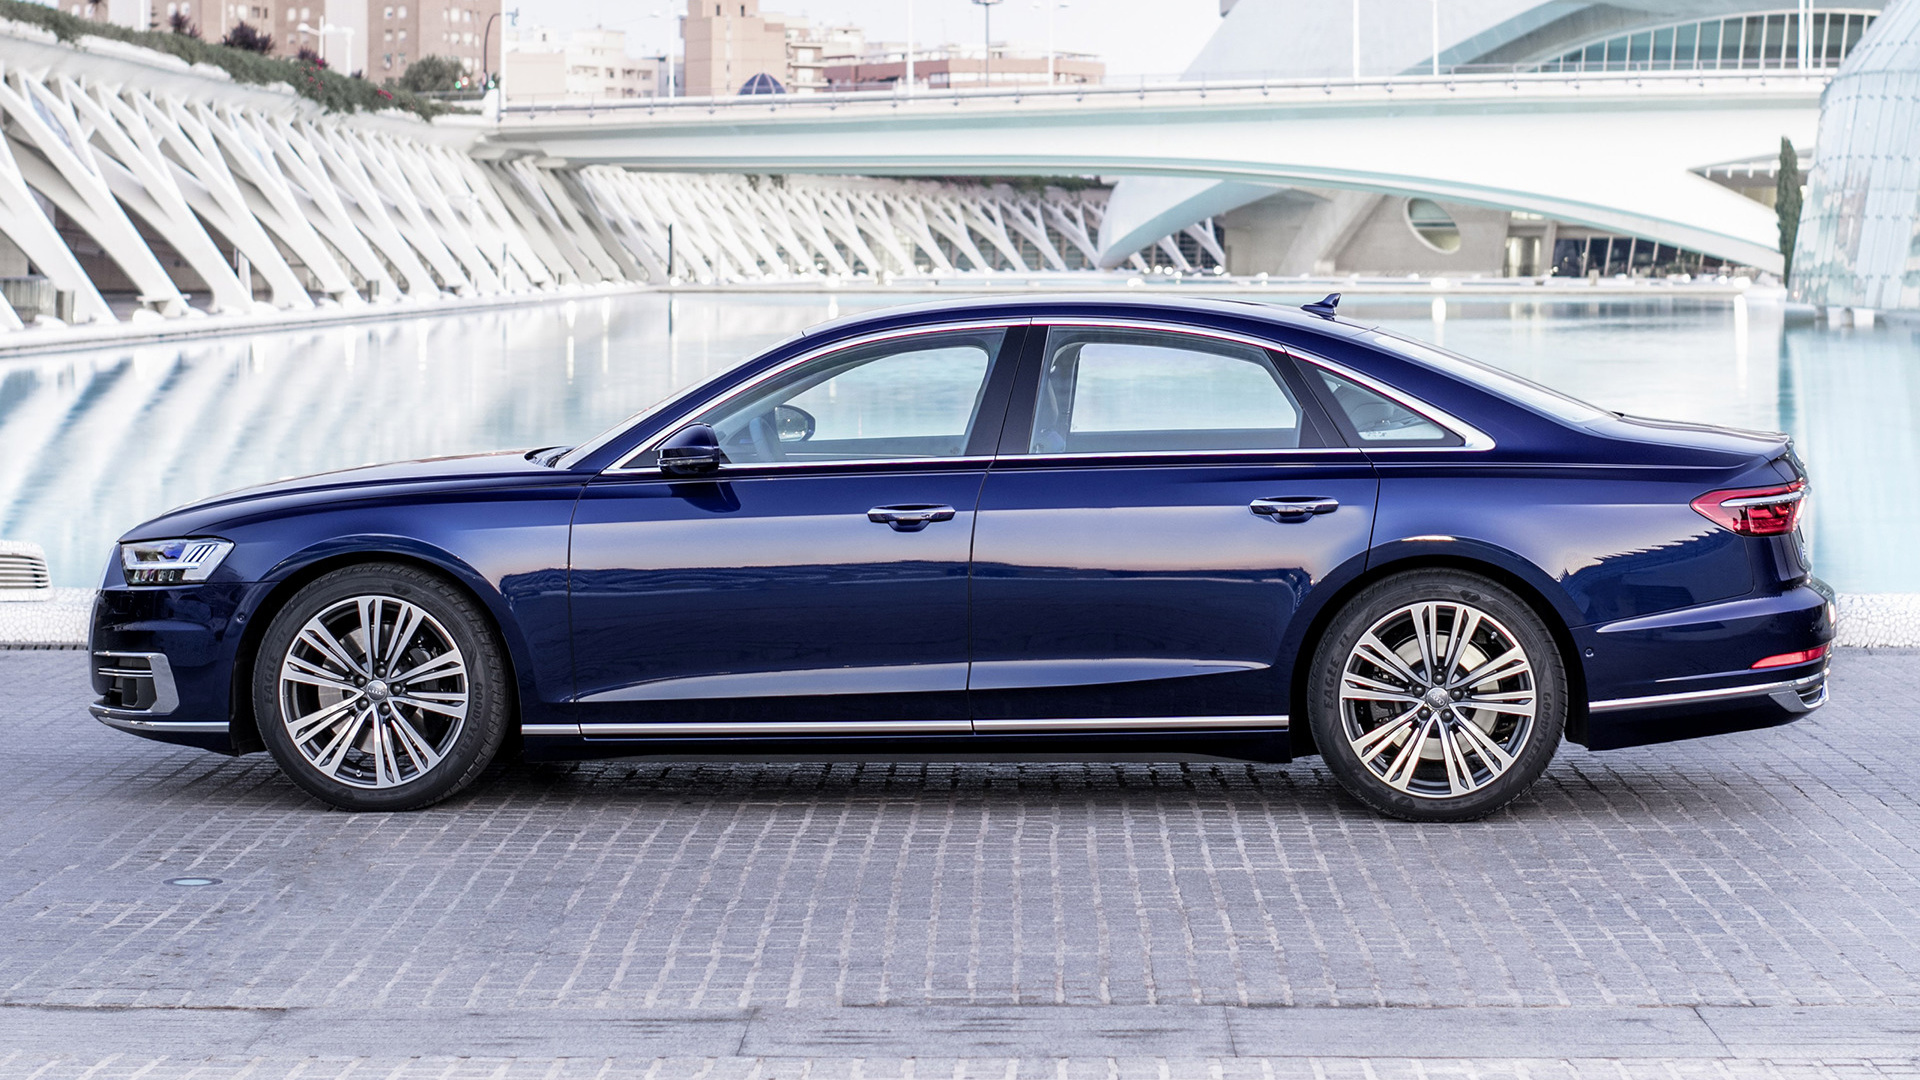 Audi A8 Blue Car Car Full Size Car Luxury Car Sedan 1920x1080